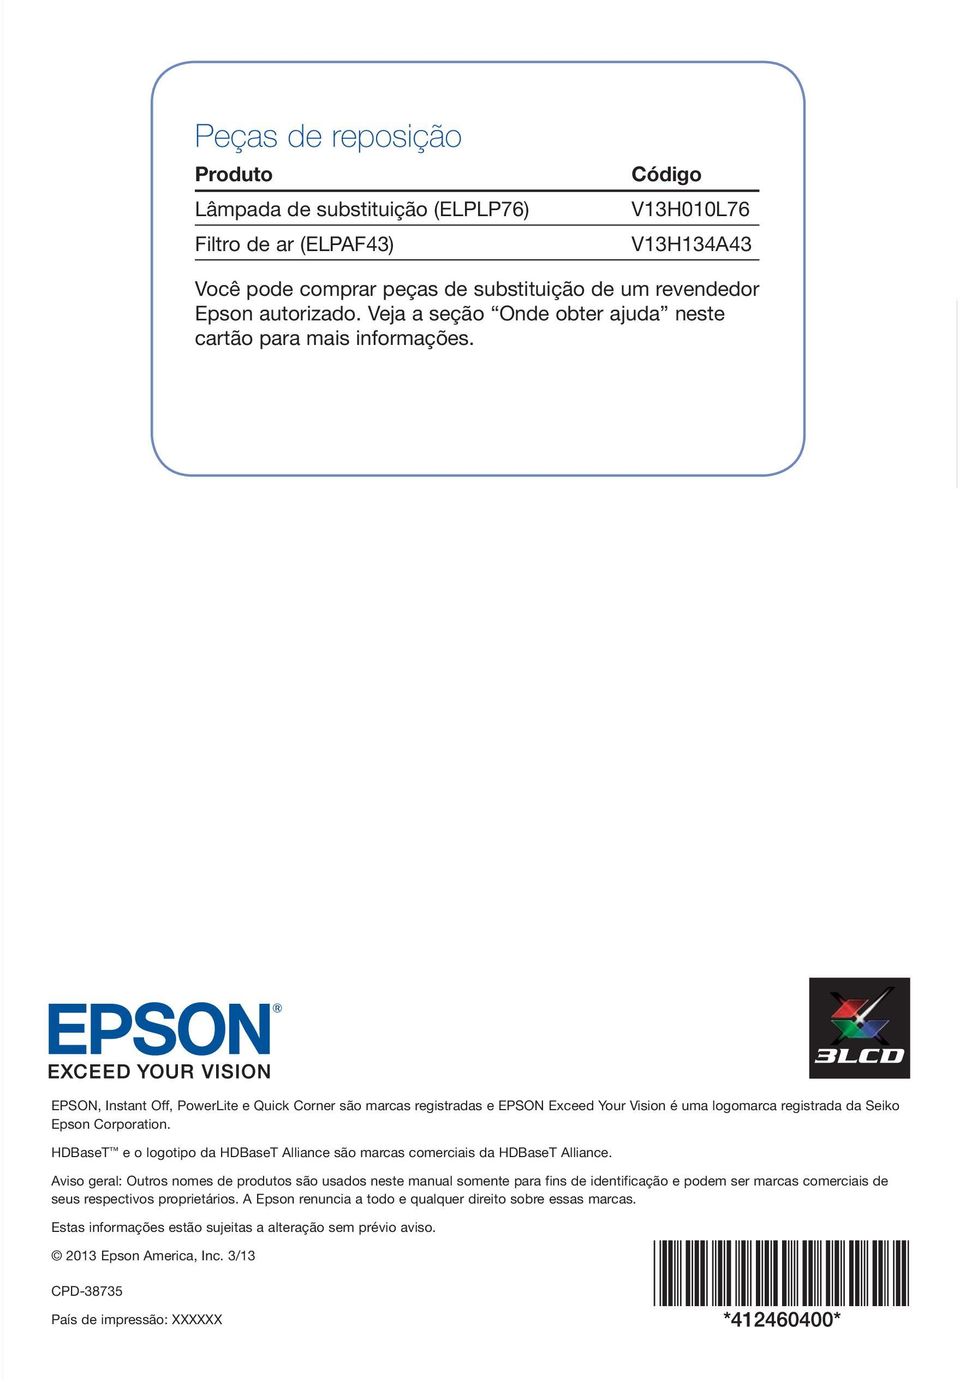 EPSON, Instant Off, PowerLite e Quick Corner são marcas registradas e EPSON Exceed Your Vision é uma logomarca registrada da Seiko Epson Corporation.